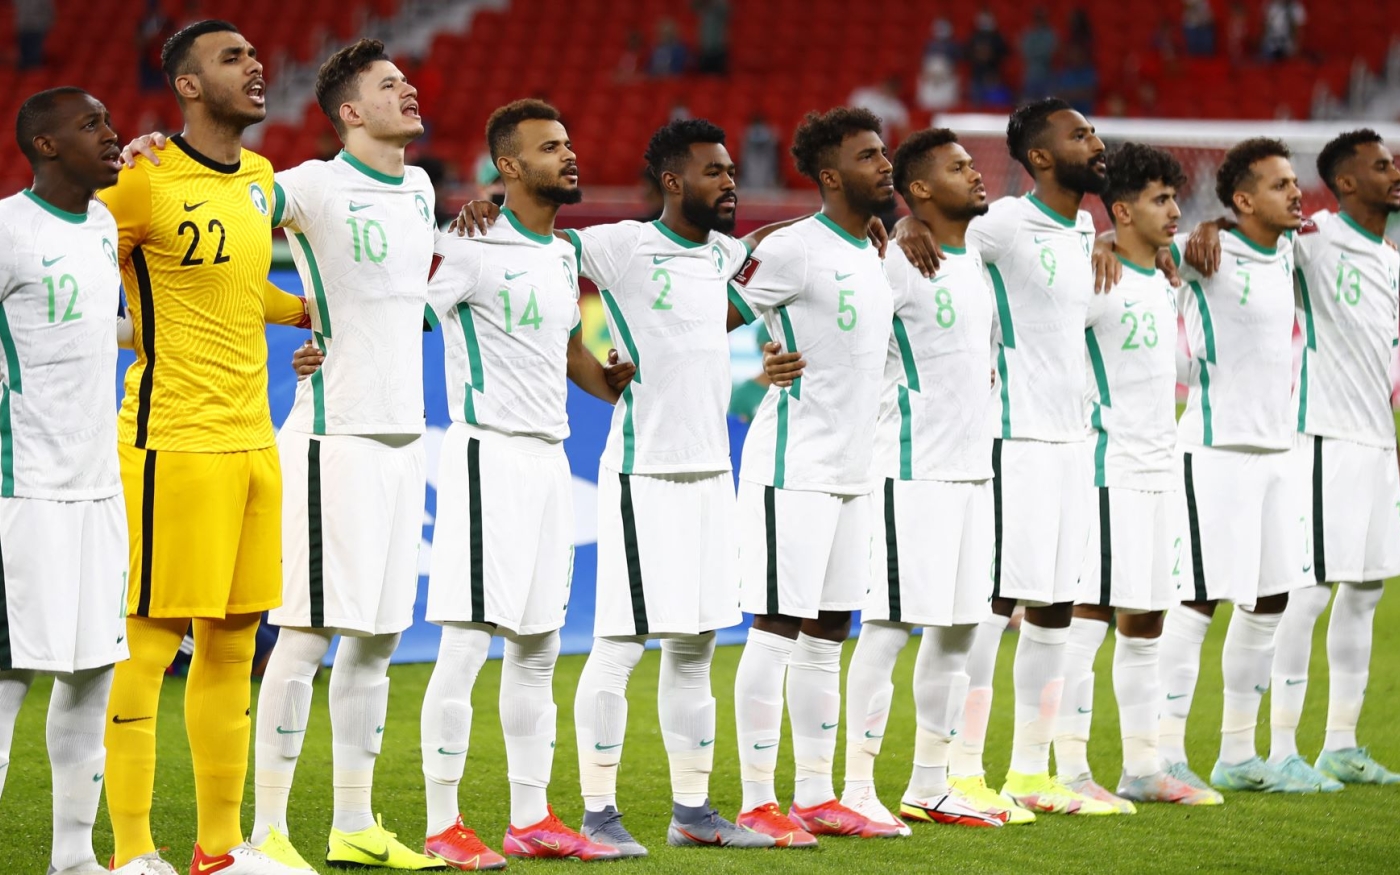 Les joueurs de la sélection saoudienne entonnent leur hymne national lors de la Coupe arabe de la FIFA 2021 au Qatar (AFP/Khaled Desouki)